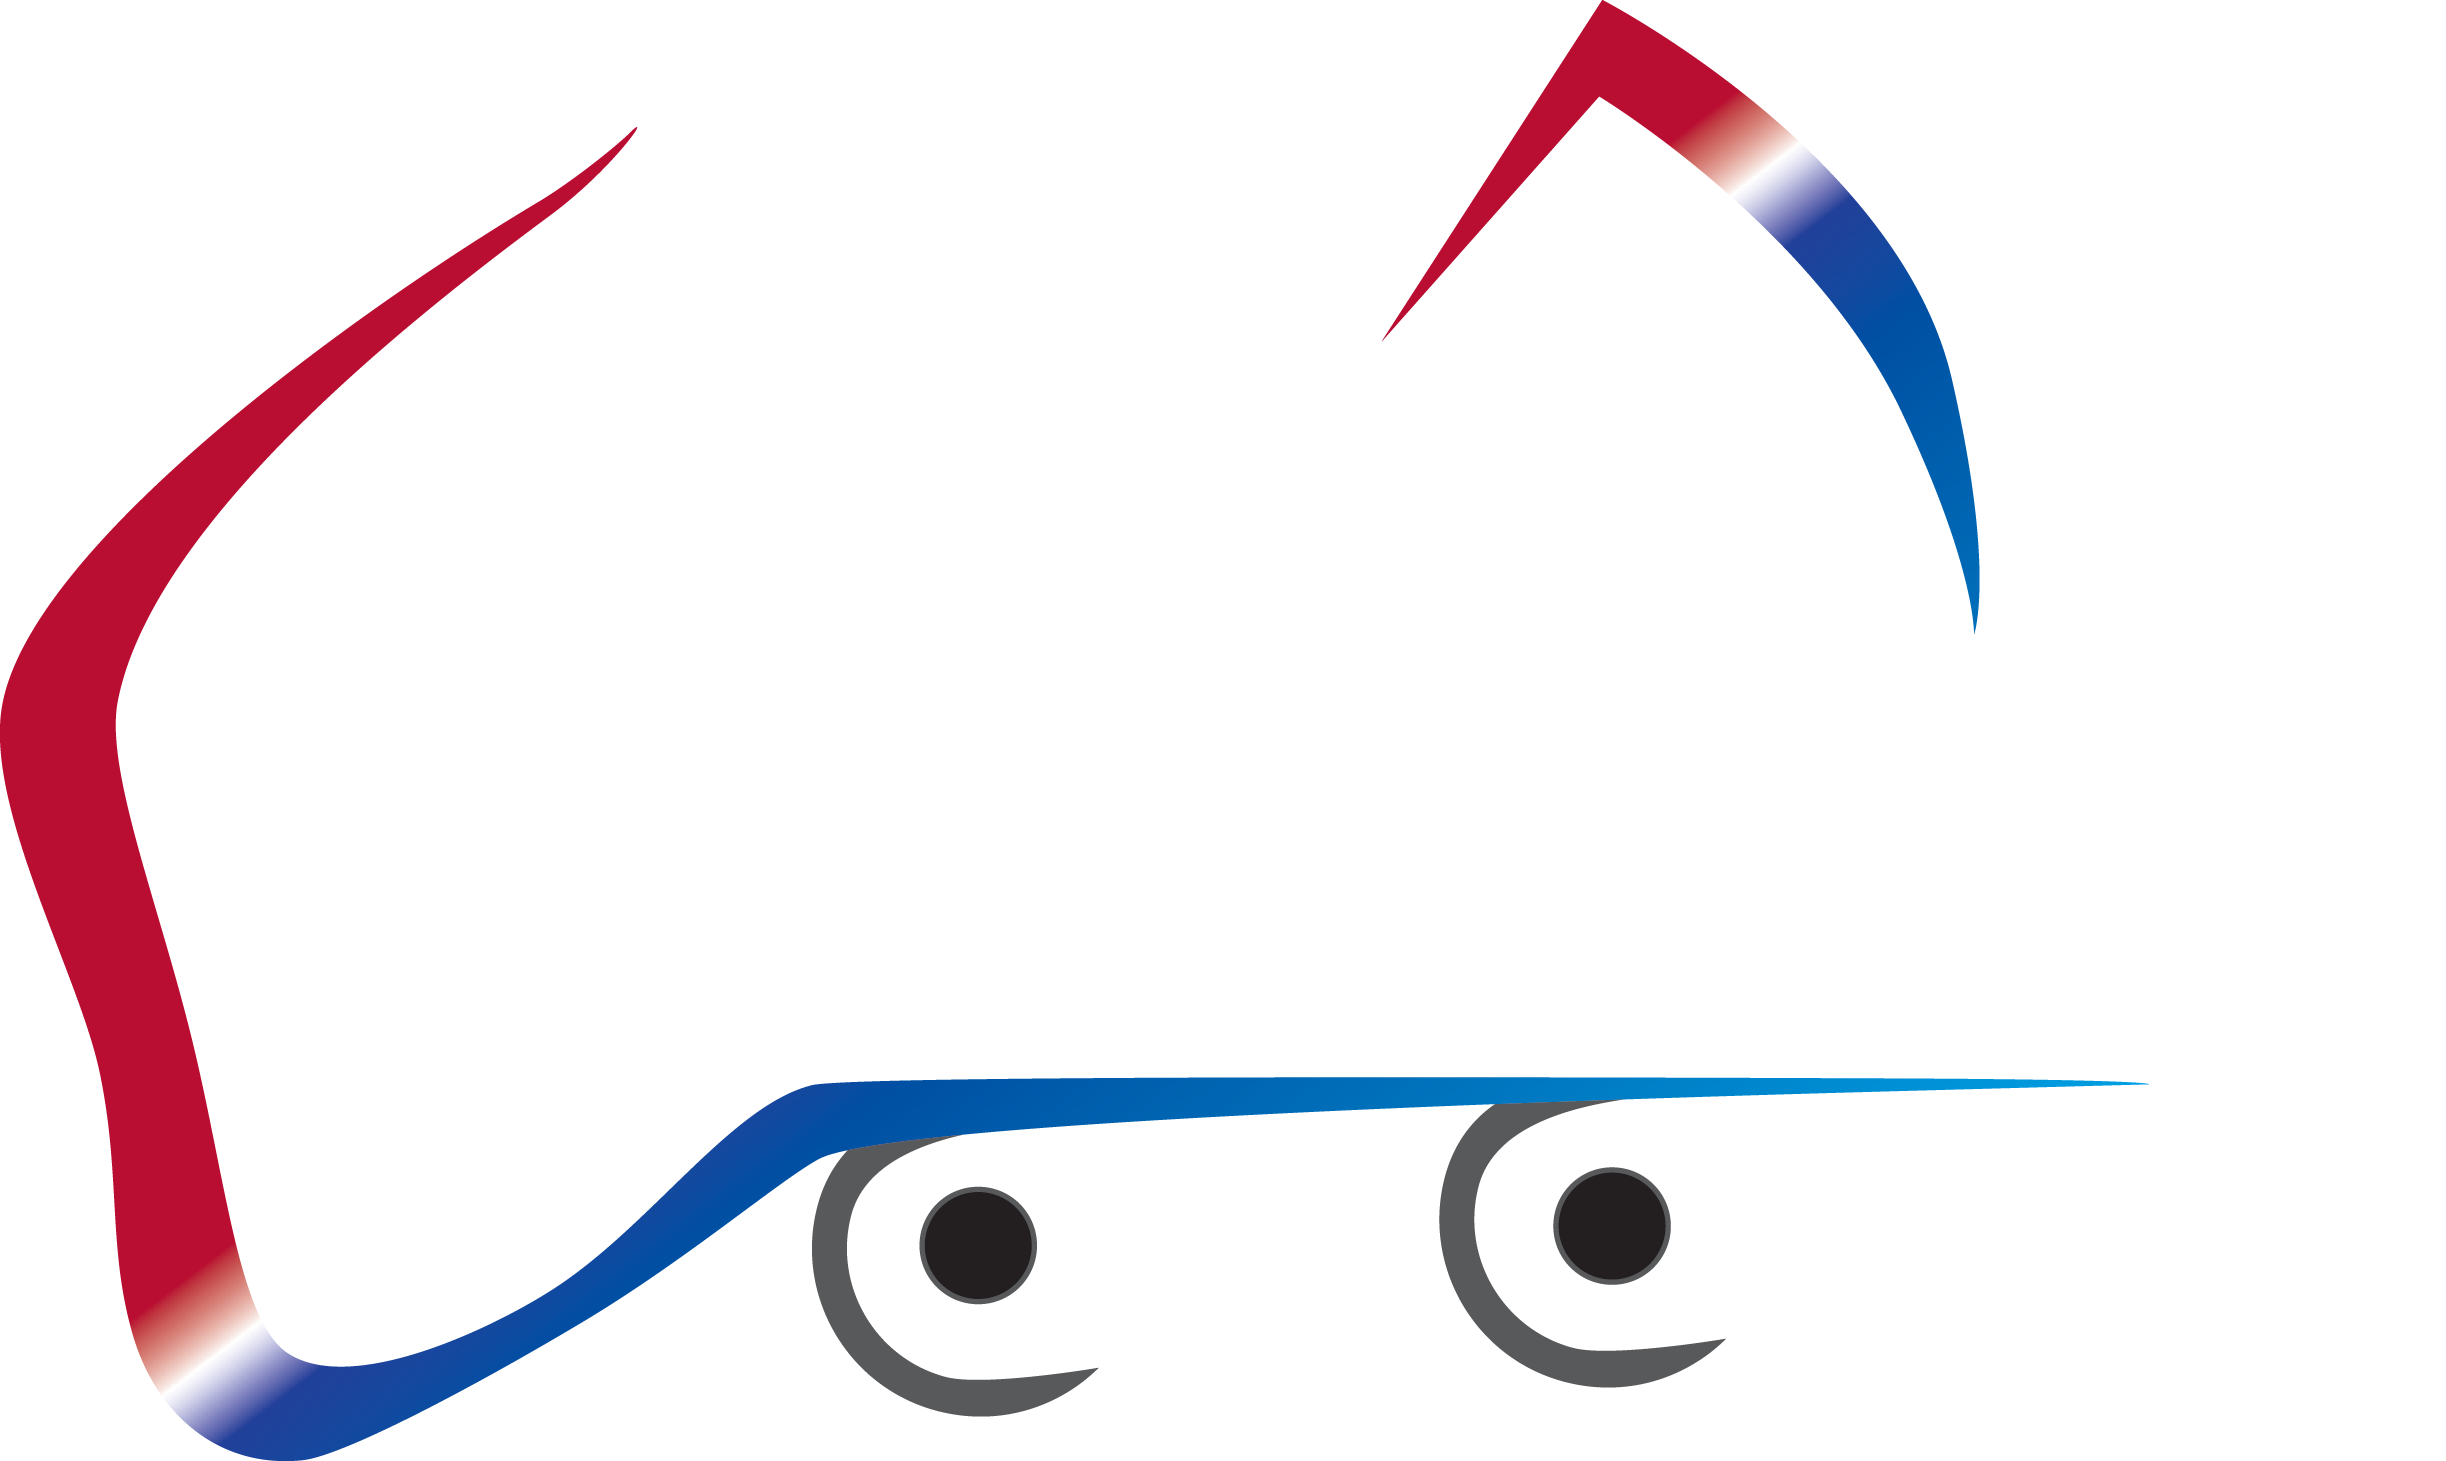 Australian Caravan Centre - Australian Caravan Centre - Caravans For Sale (2446x1461)